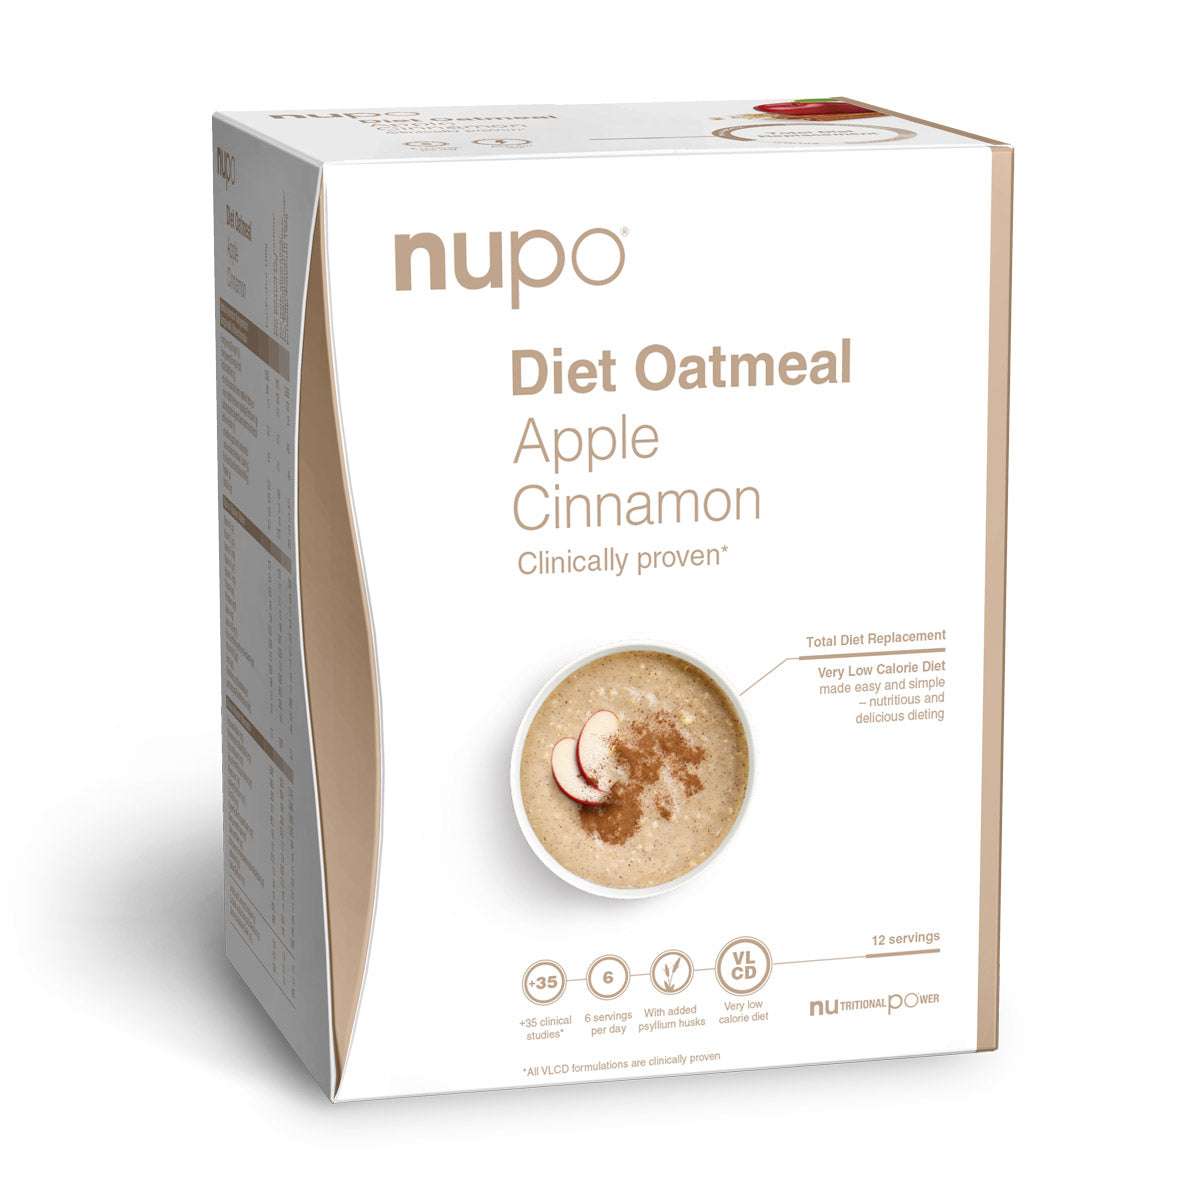 Brug Nupo Diet Oatmeal (384g) - Apple & Cinnamon til en forbedret oplevelse